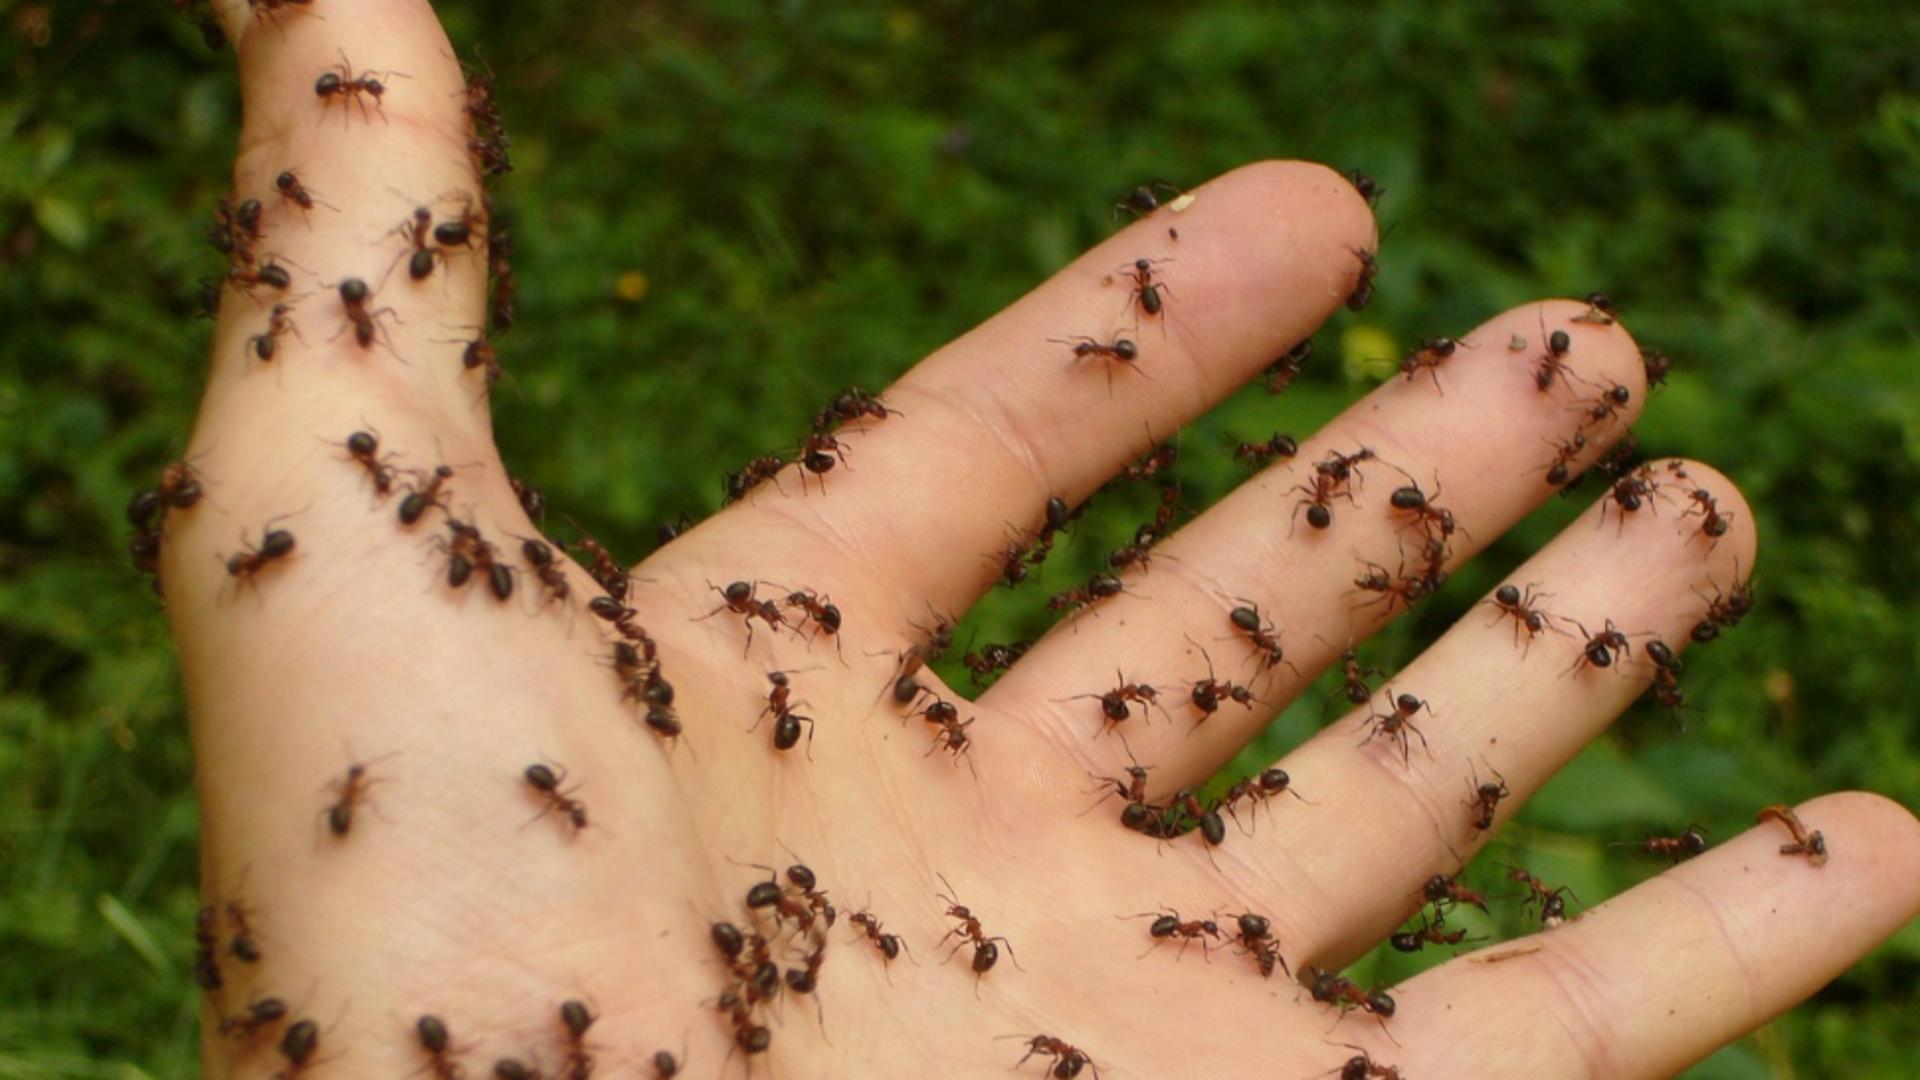 Scapă definitiv de furnici cu ajutorul acestui amestec. Se prepară în 5 minute cu ingrediente pe care oricine le are în casă